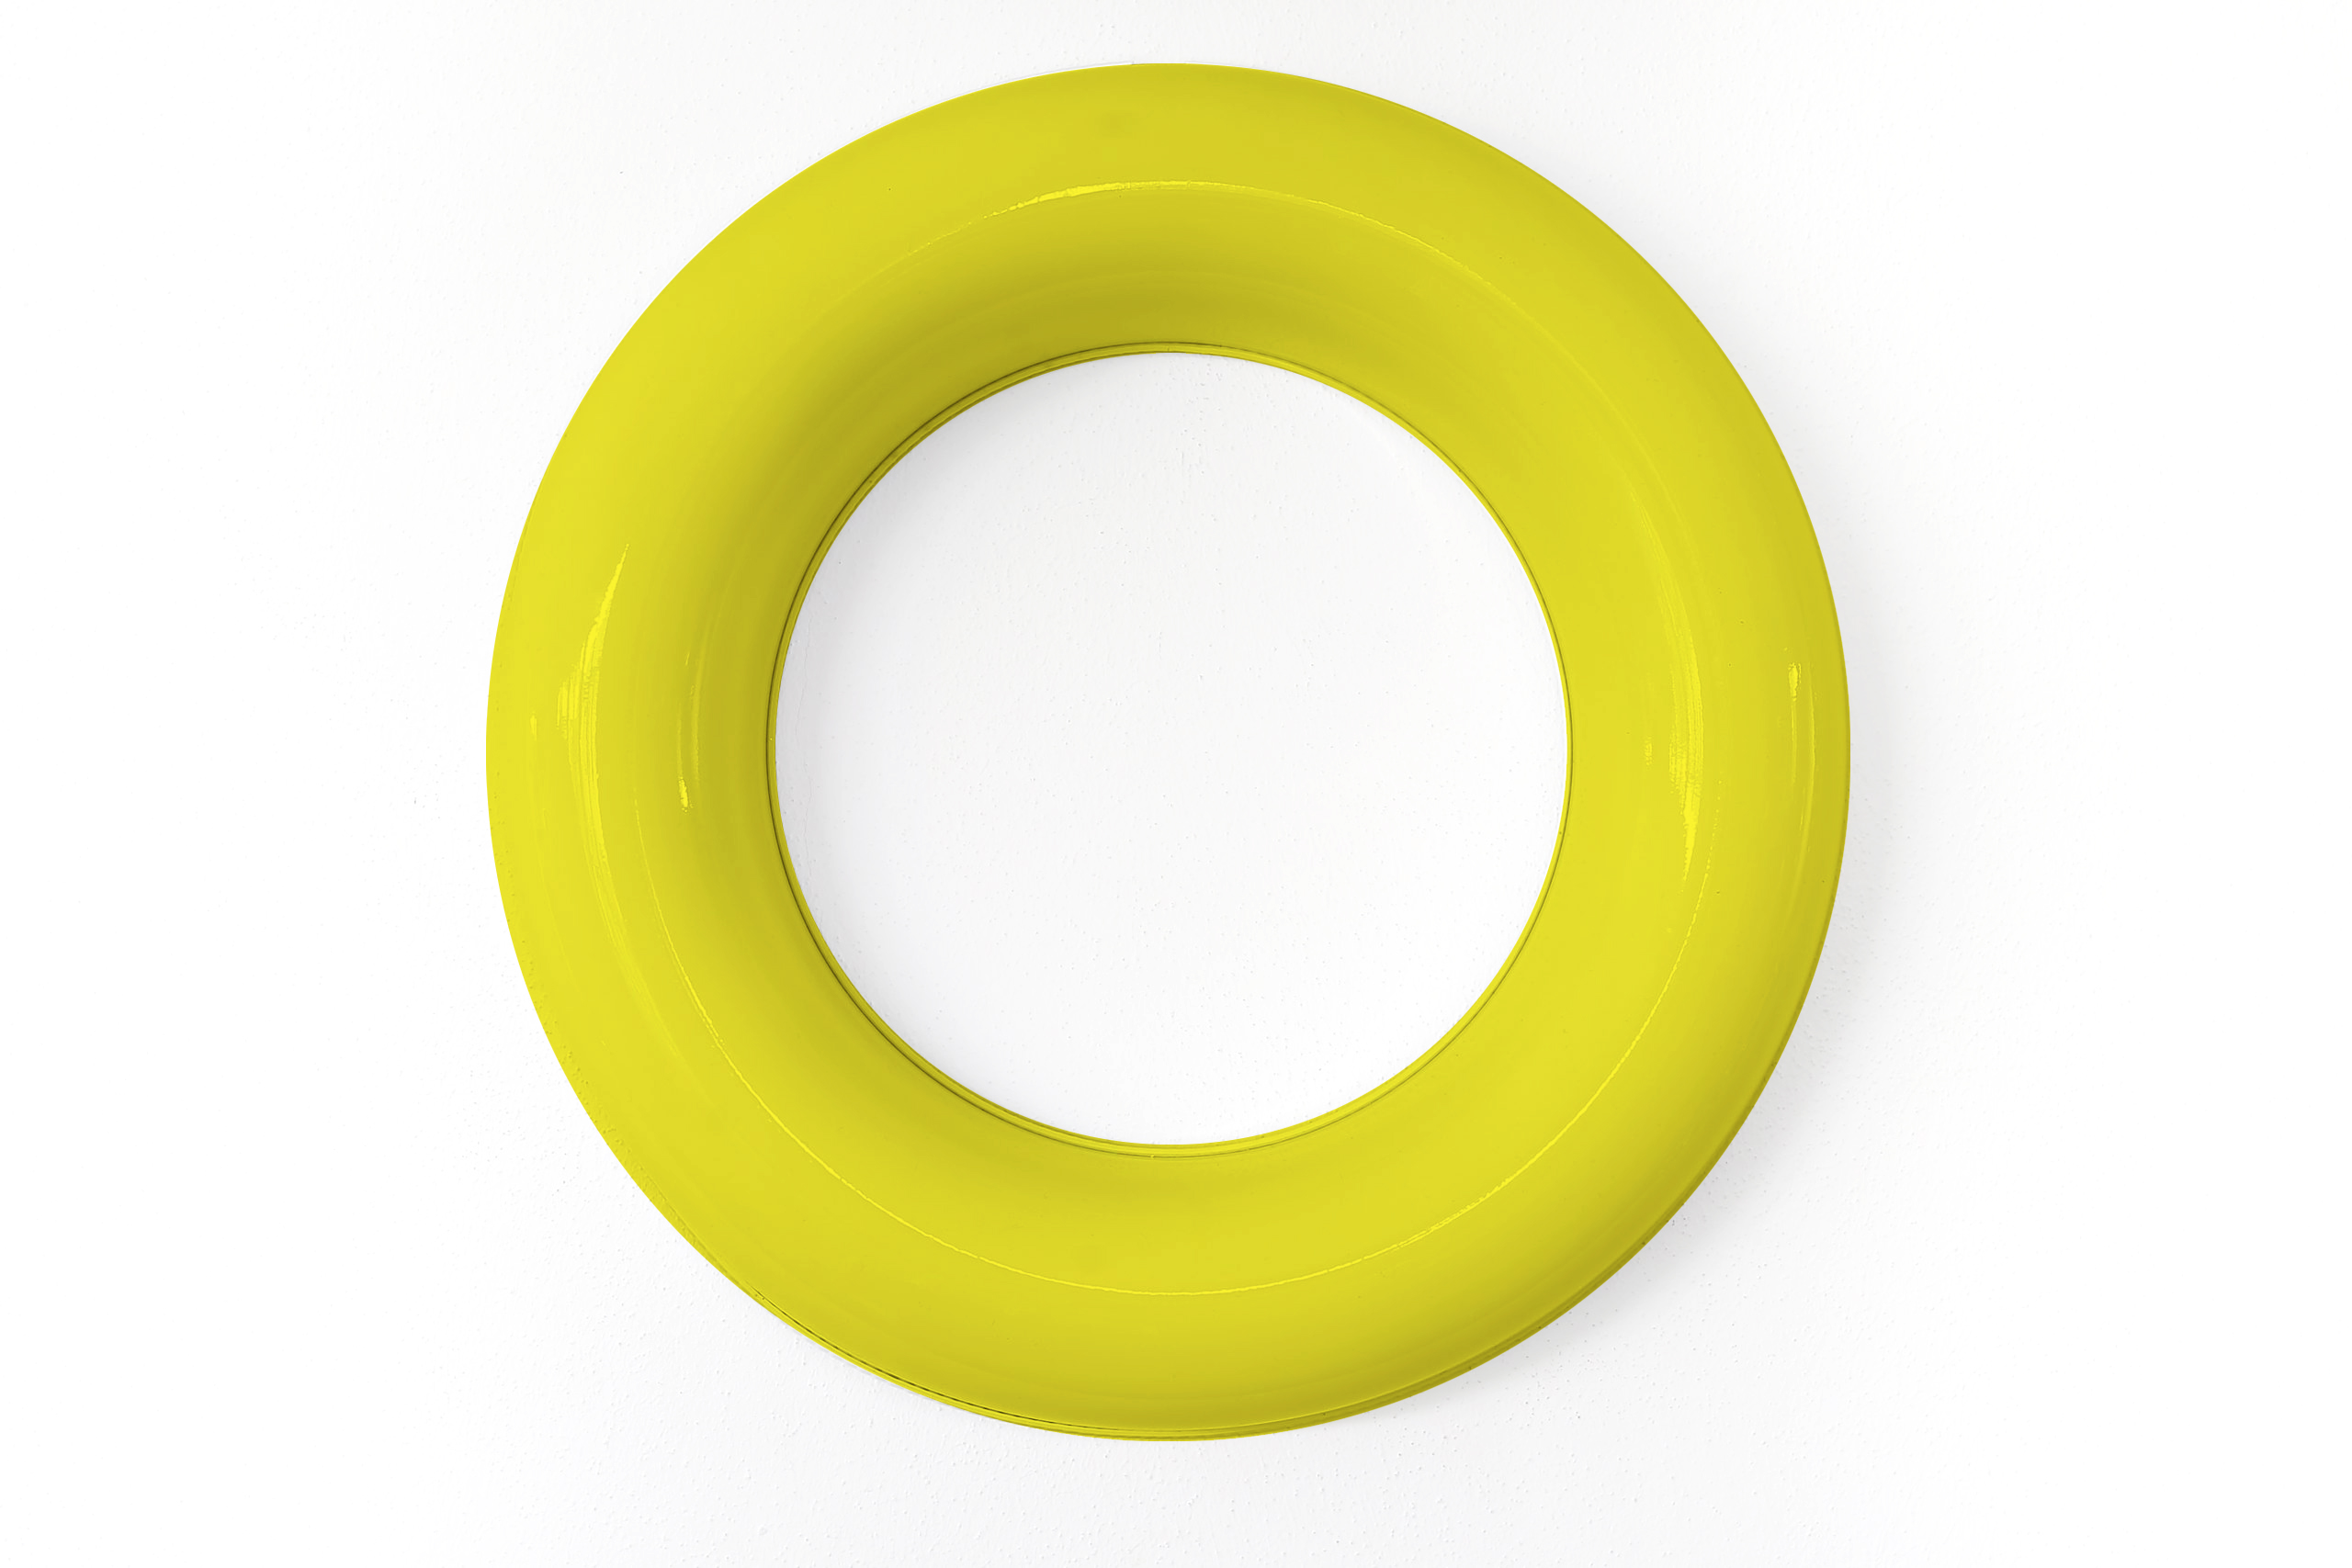 Festschmuck by Magneticas Designkranz Gelb lackiert, Durchmesser 30 cm (1-tlg.)